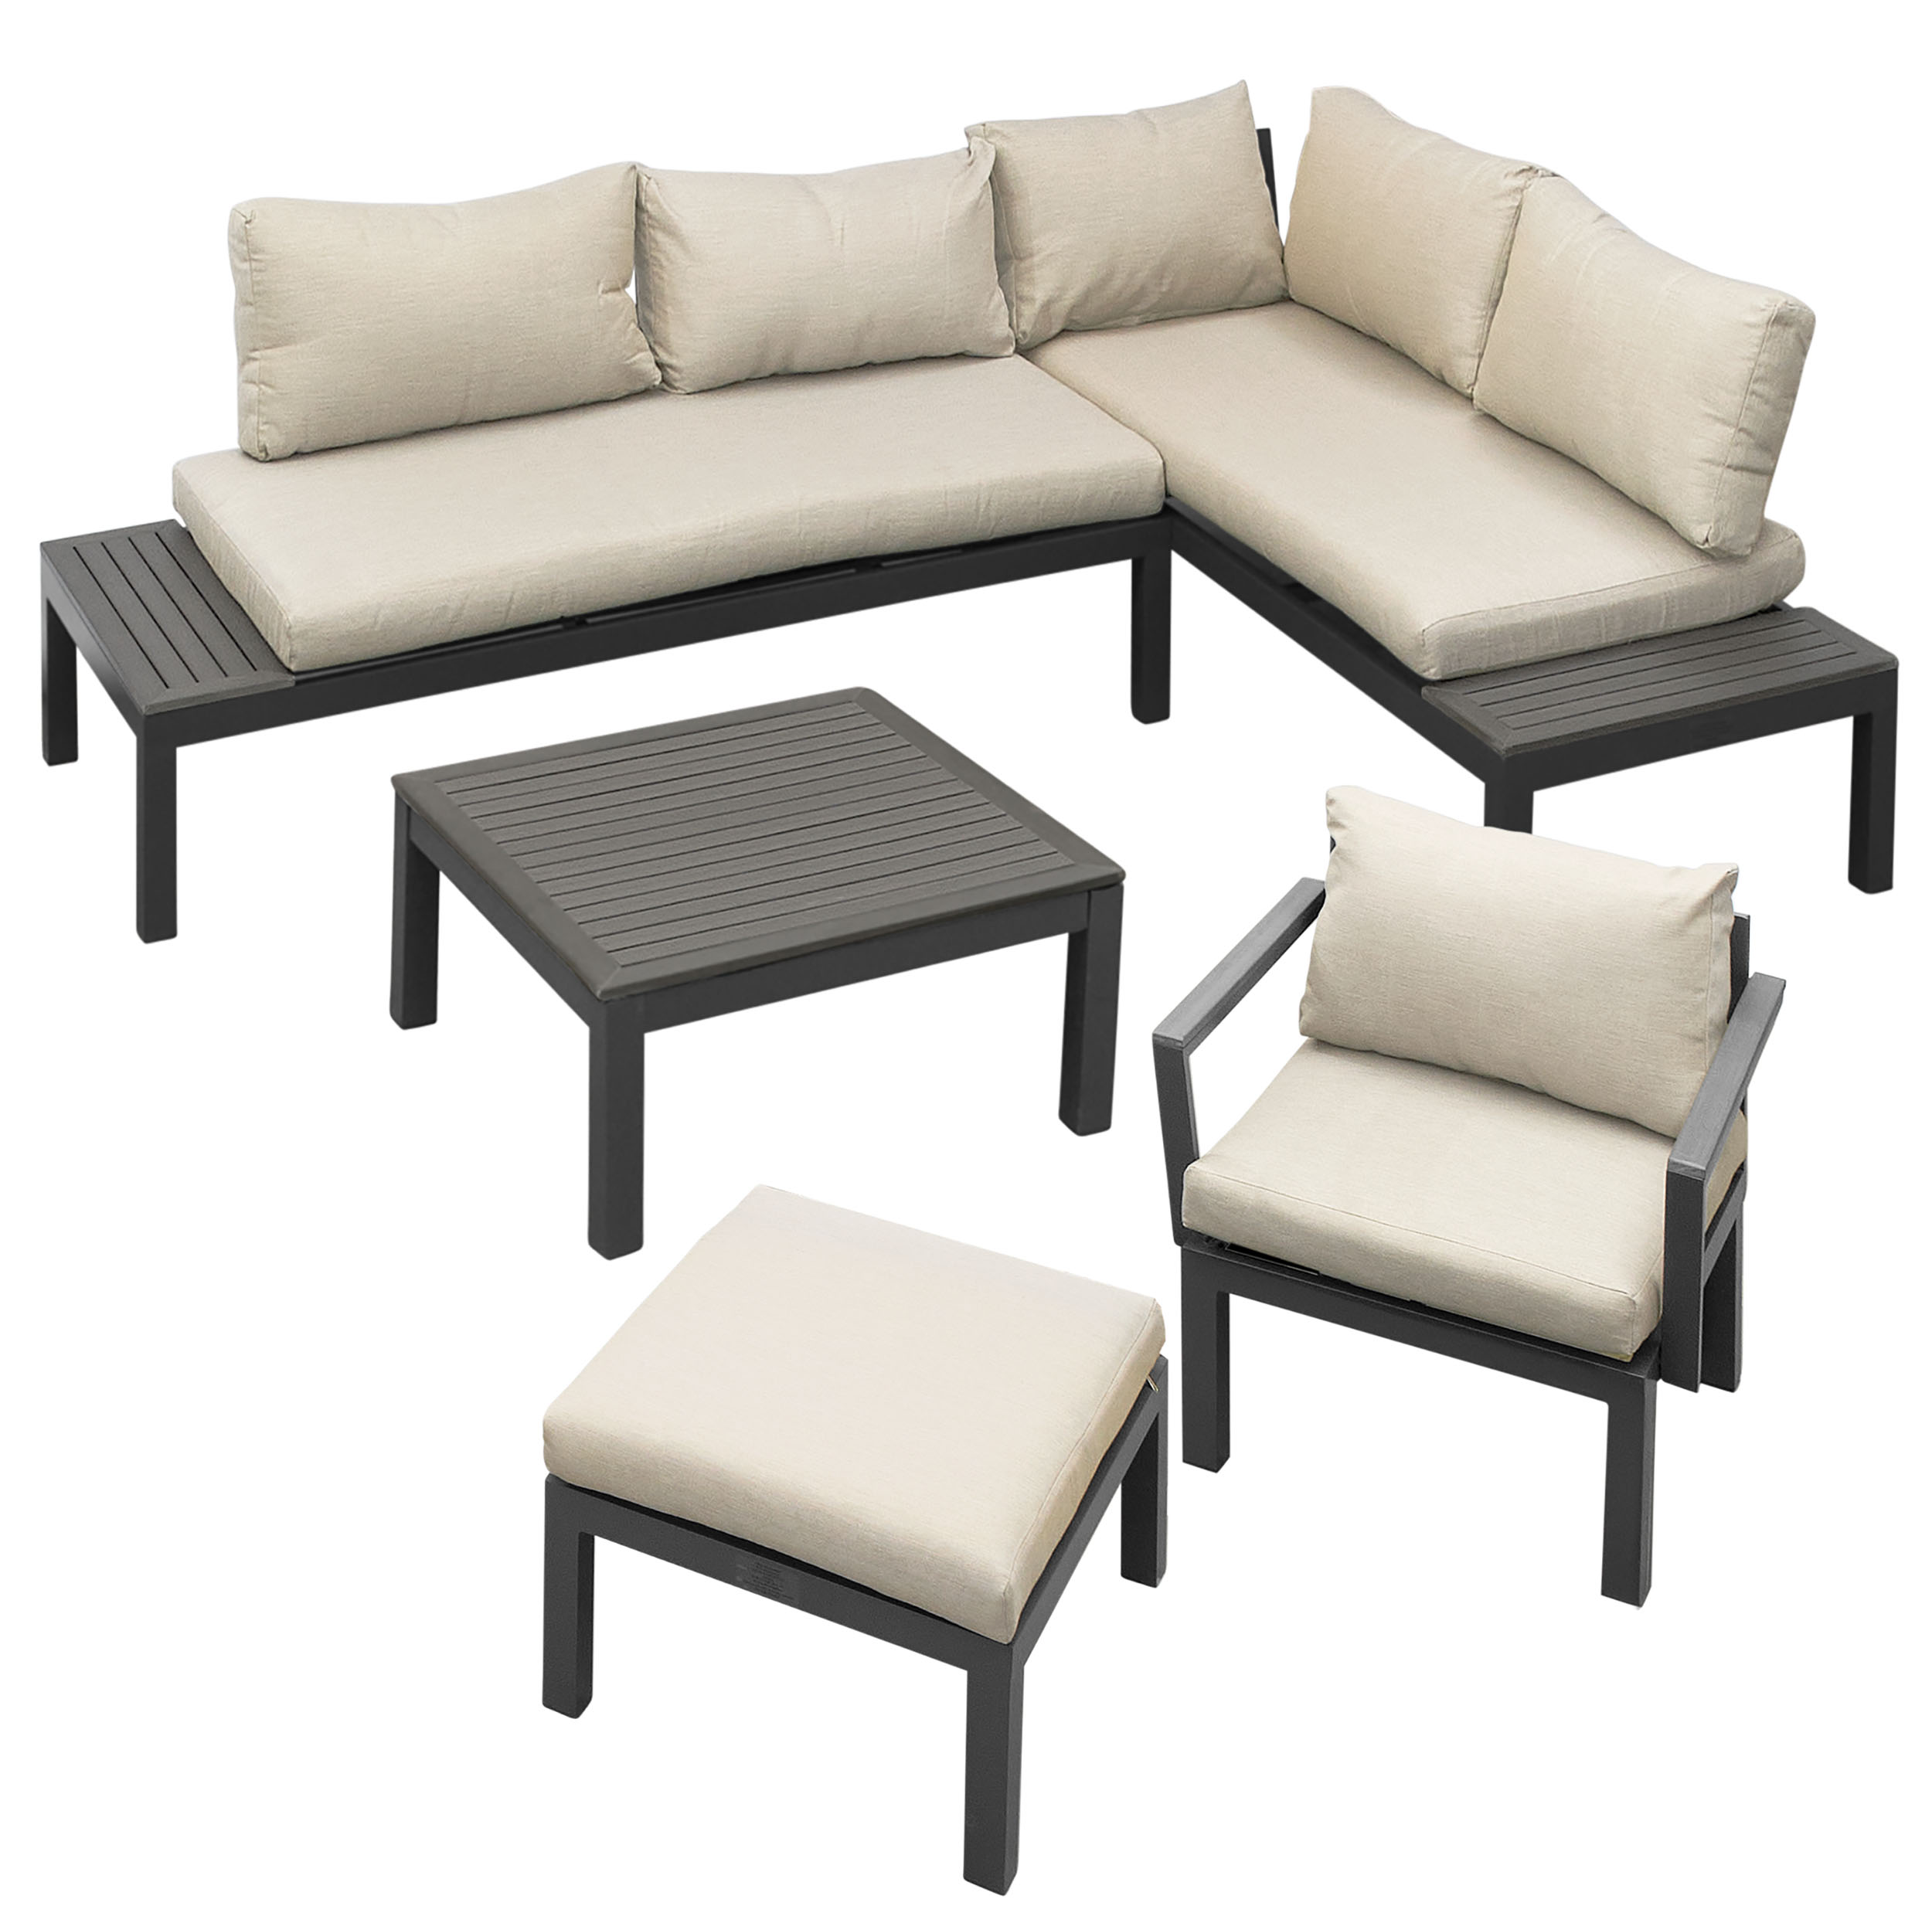 Gartenfreude - Modular Lounge Set - Garden Furniture - High